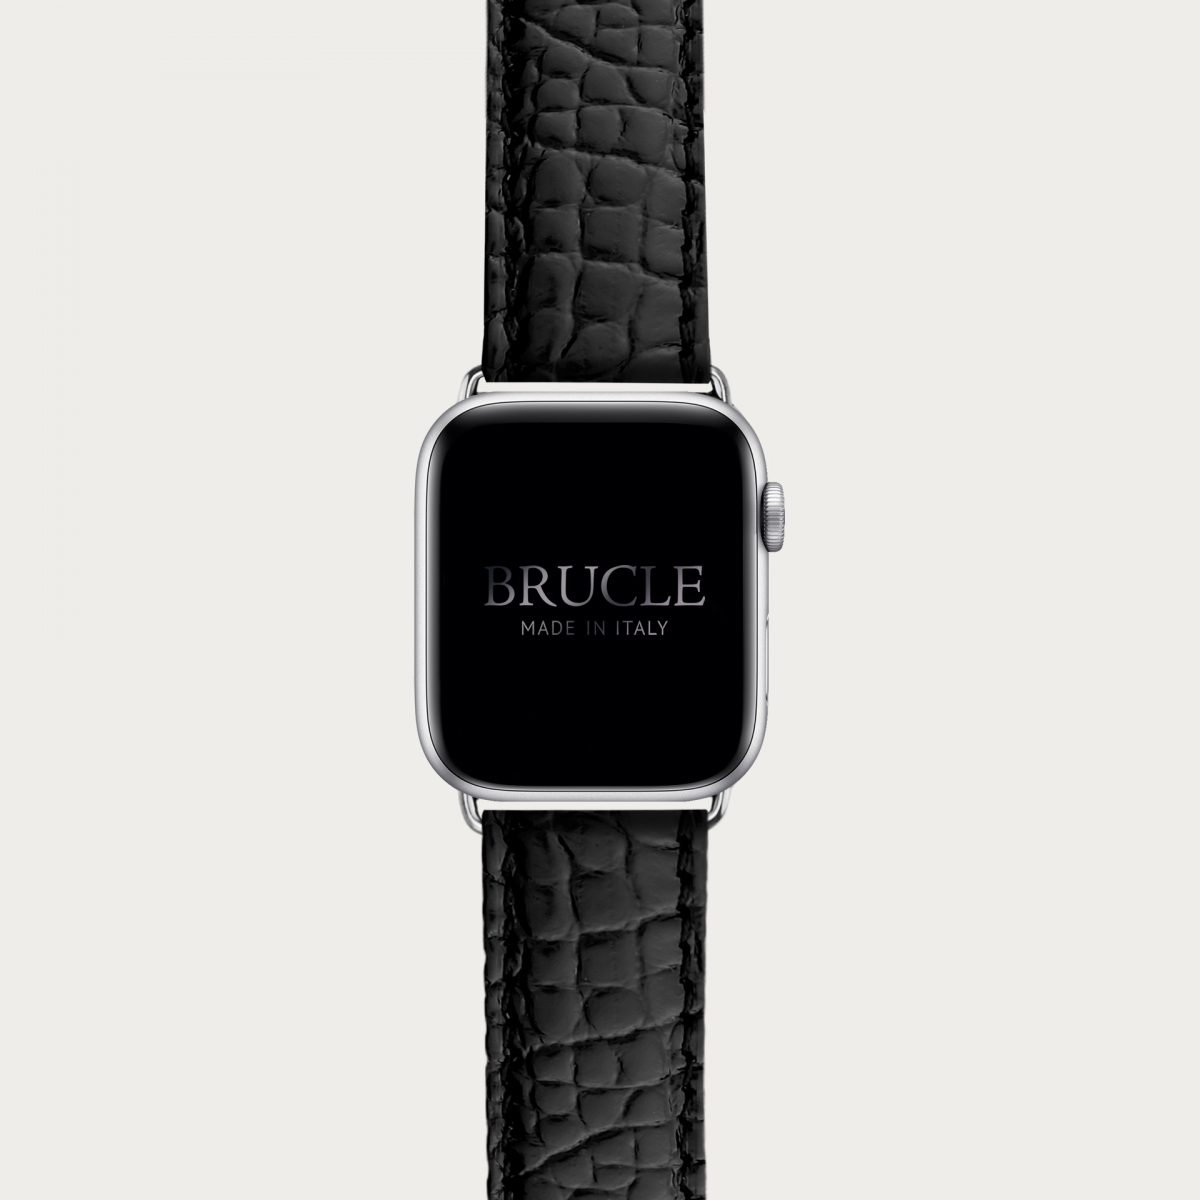 Correa de reloj en genuino caimán compatible con Apple Watch / Samsung smartwatch, negro